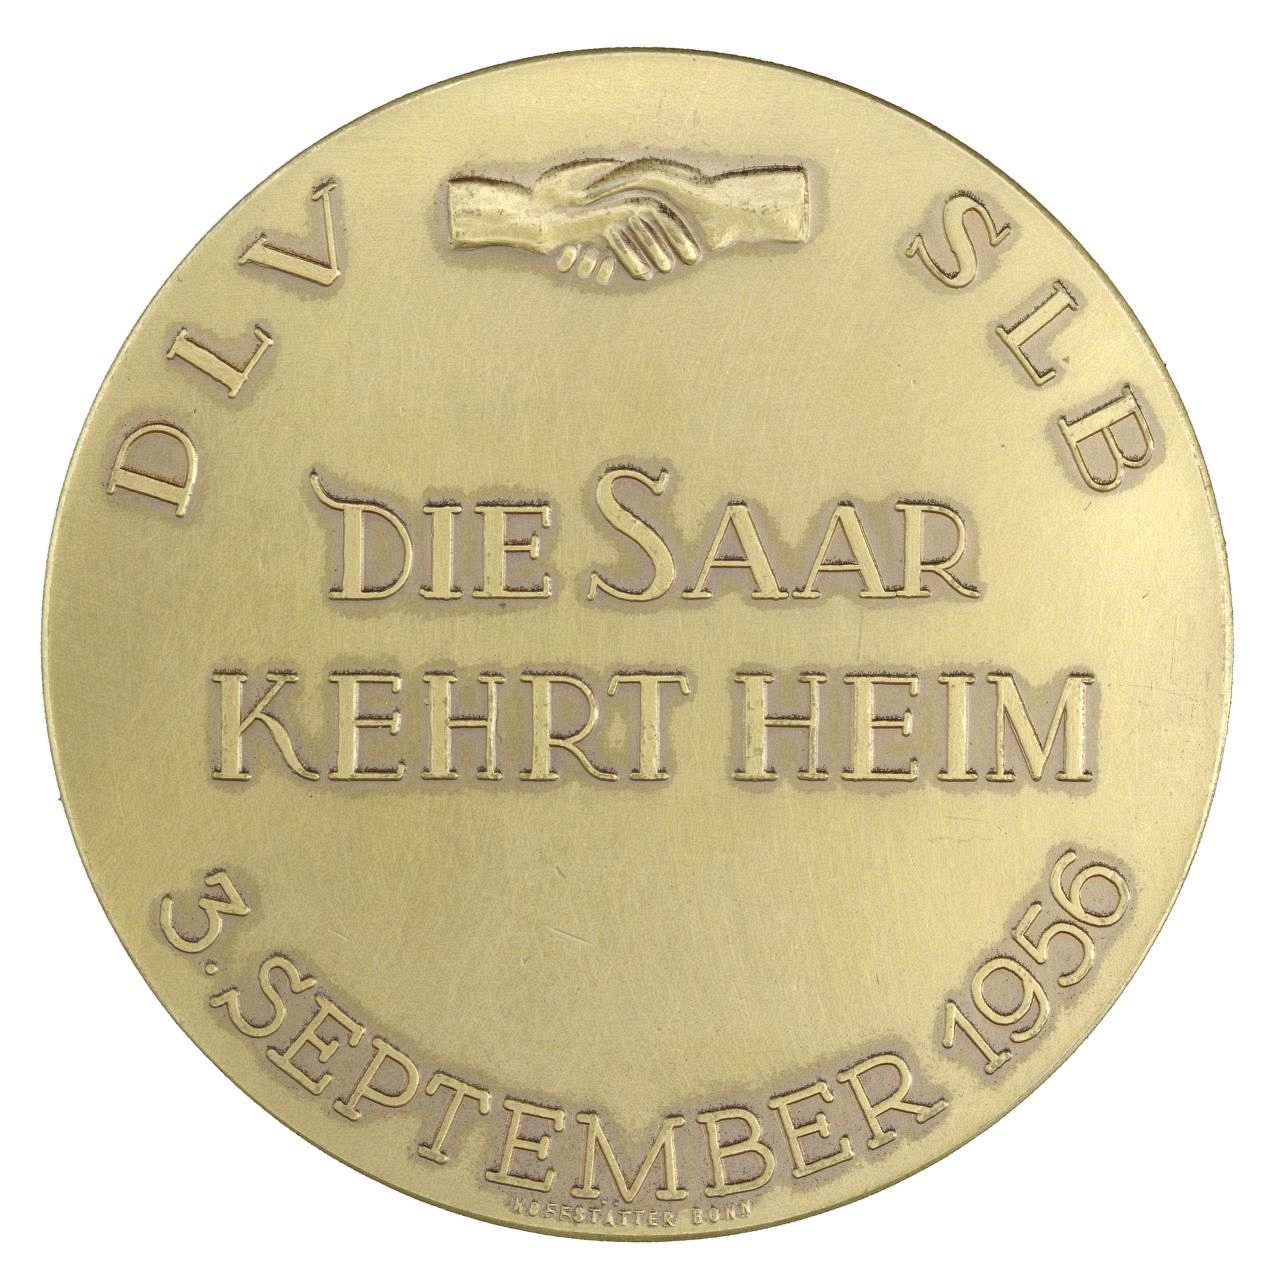 Auf der Vorderseite erhabene Umschrift 'DLV SLB 3. September 1956'. Zwischen DLV und SLB zwei schüttelnde Hände. In der Mitte erhaben in Großbuchstaben 'Die Saar kehrt heim'.